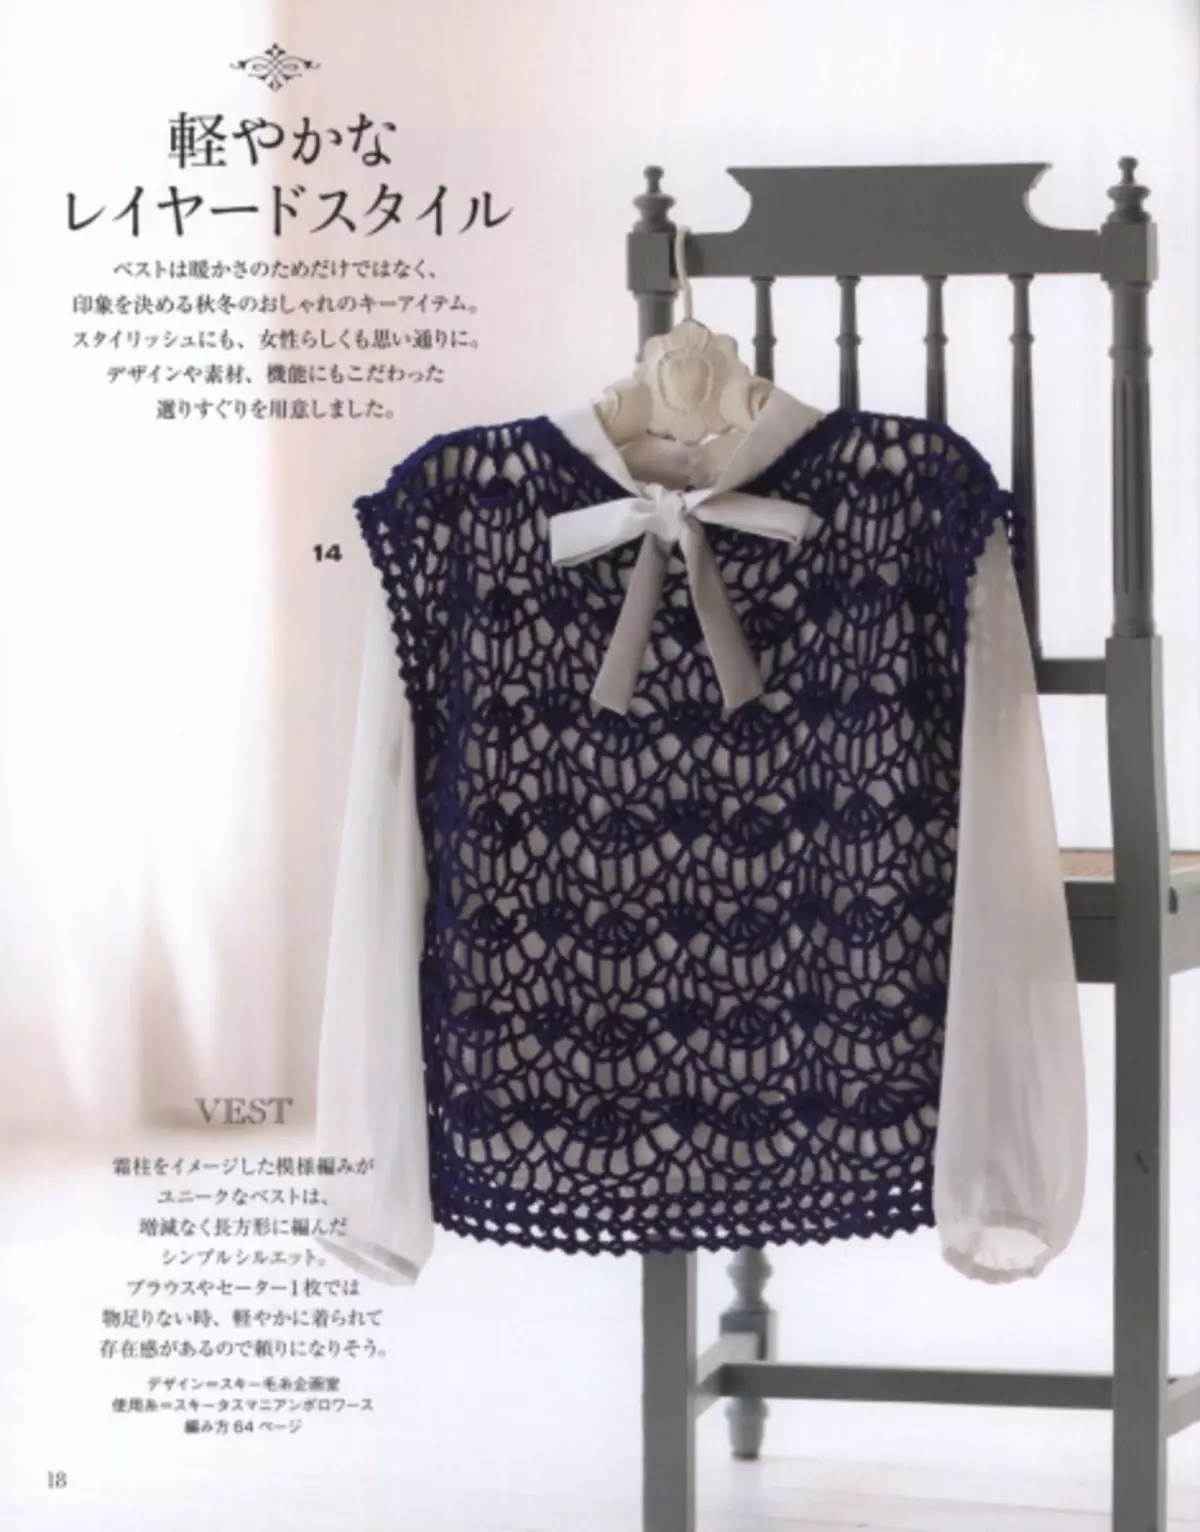 นิตยสารญี่ปุ่น 